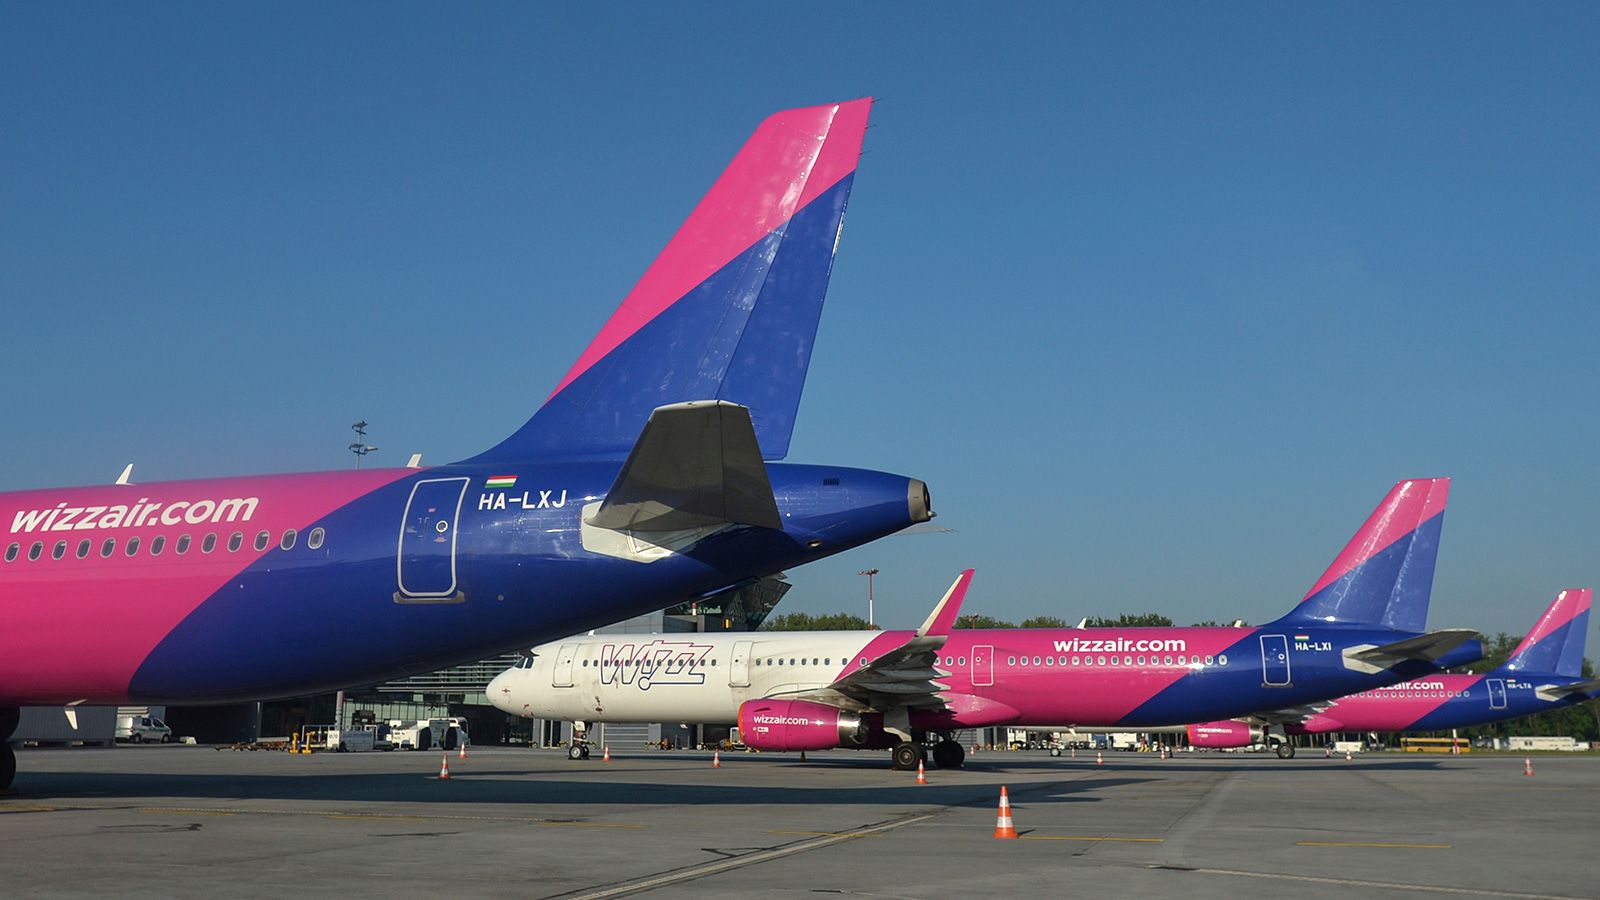 Wizz Air CEO tells staff to push through fatigue CNN